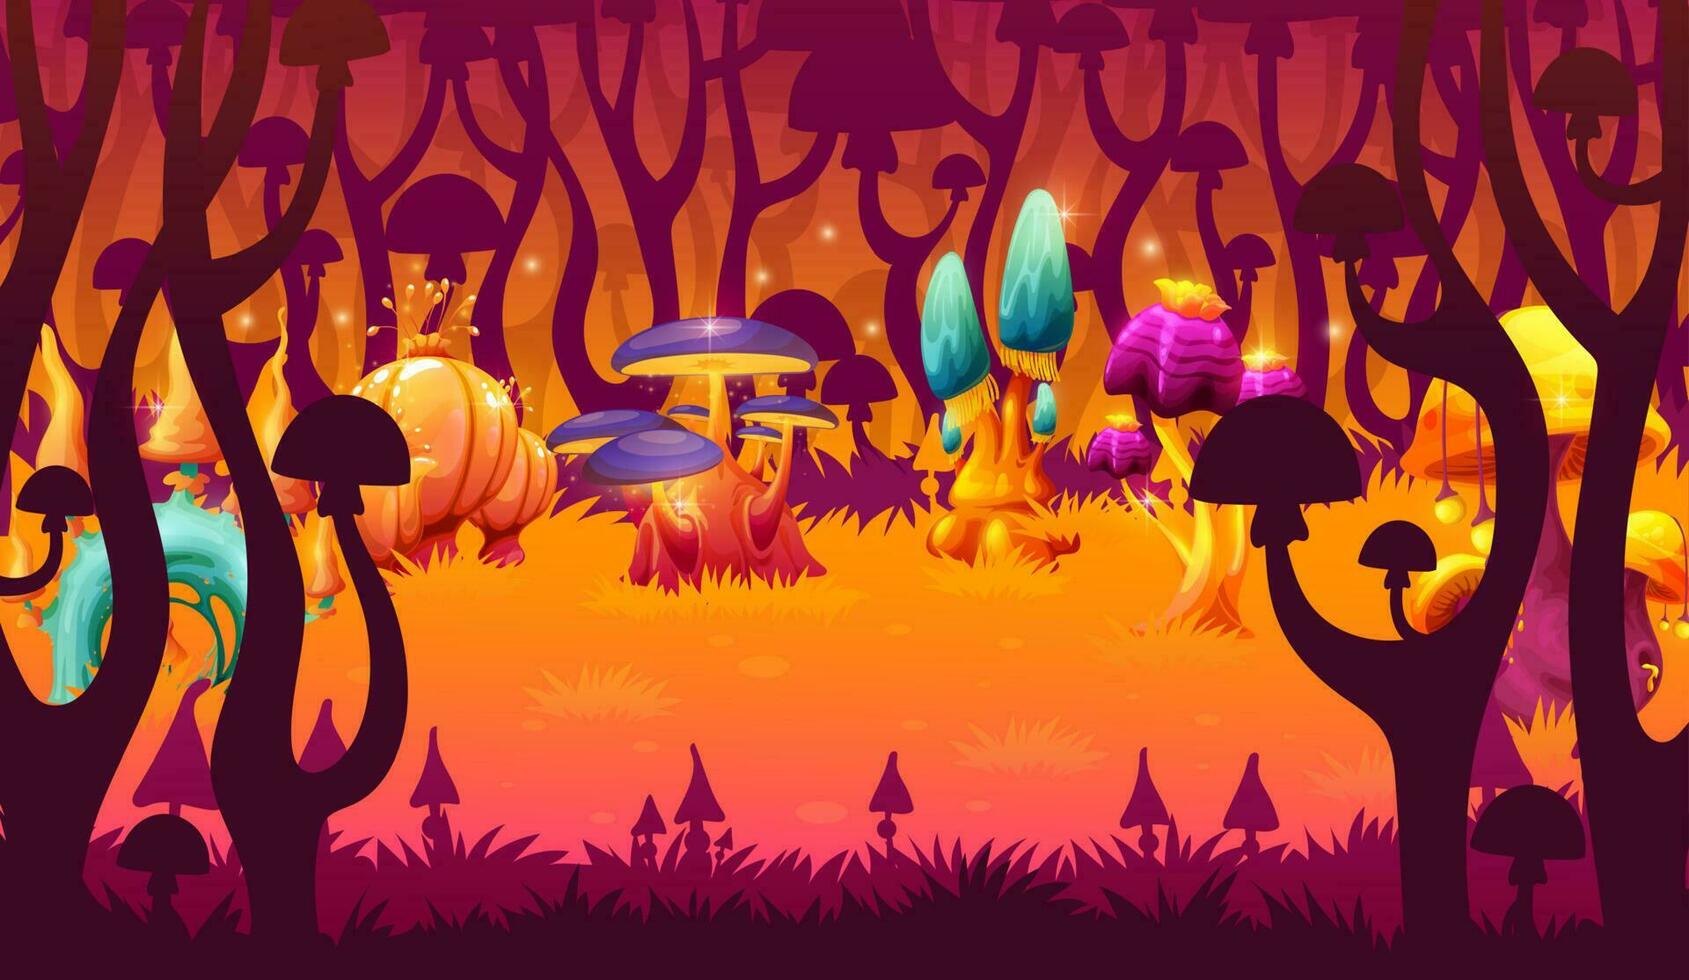 Magic luminous mushrooms game level landscape vector